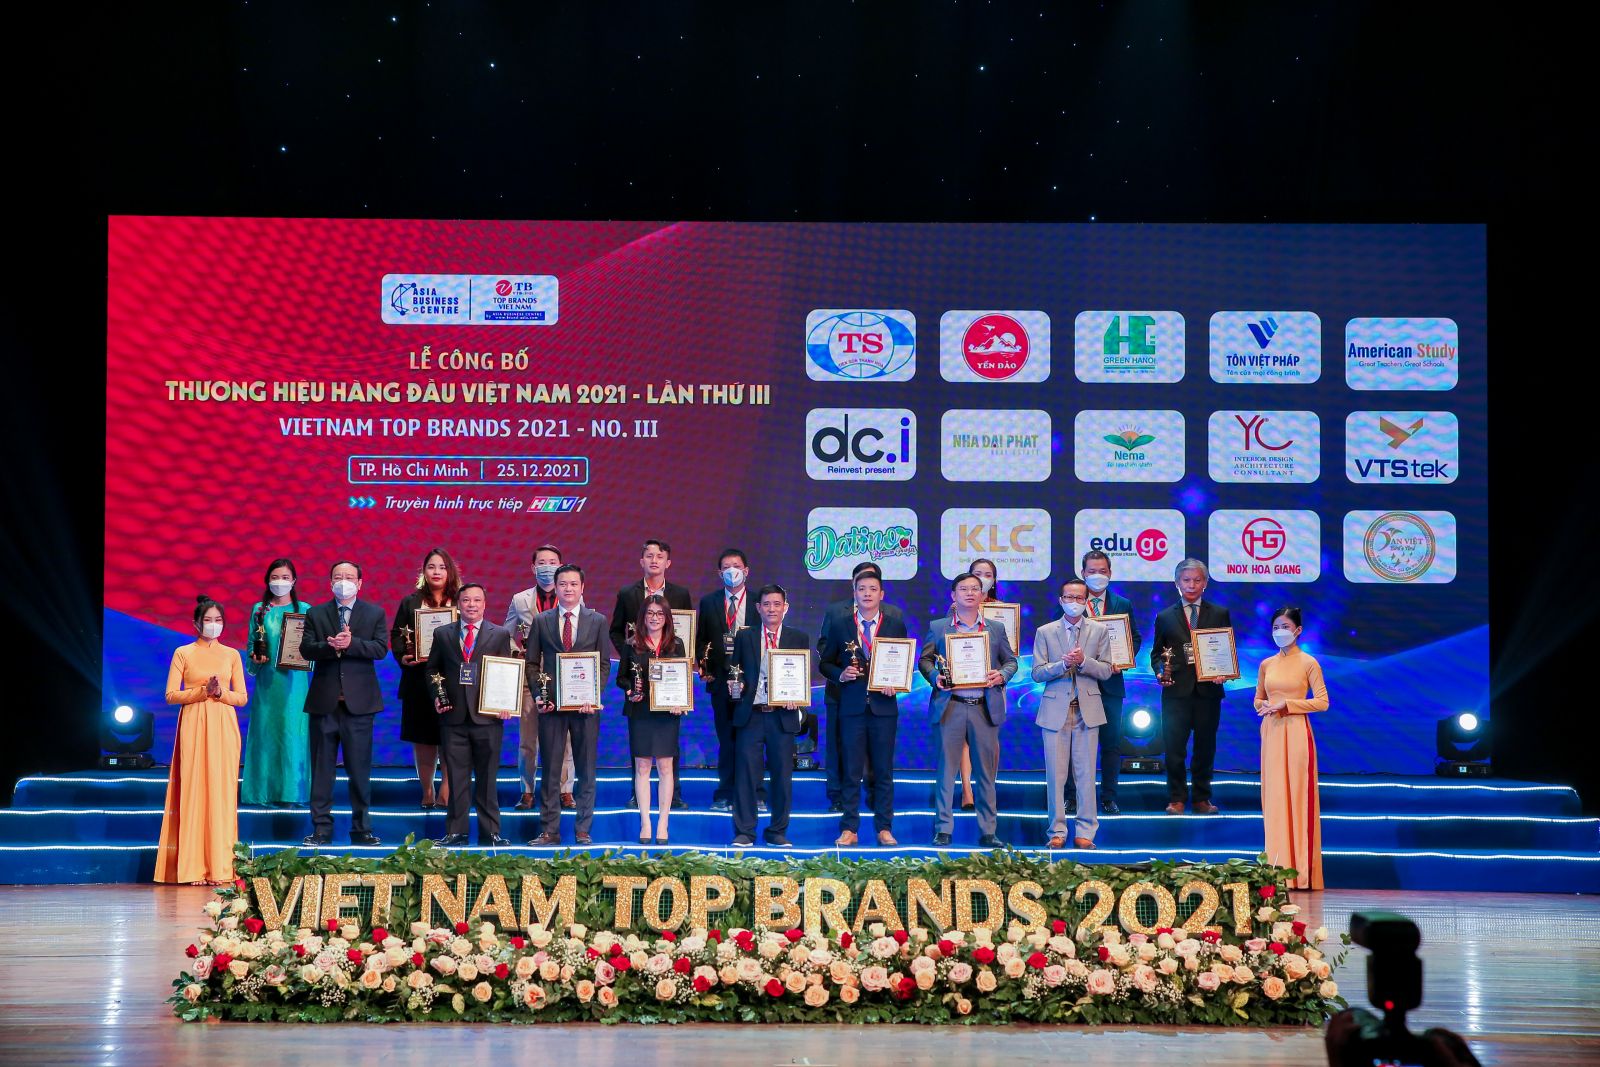 yến đảo nest đạt danh hiệu top 10 thương hiệu hàng đầu việt nam